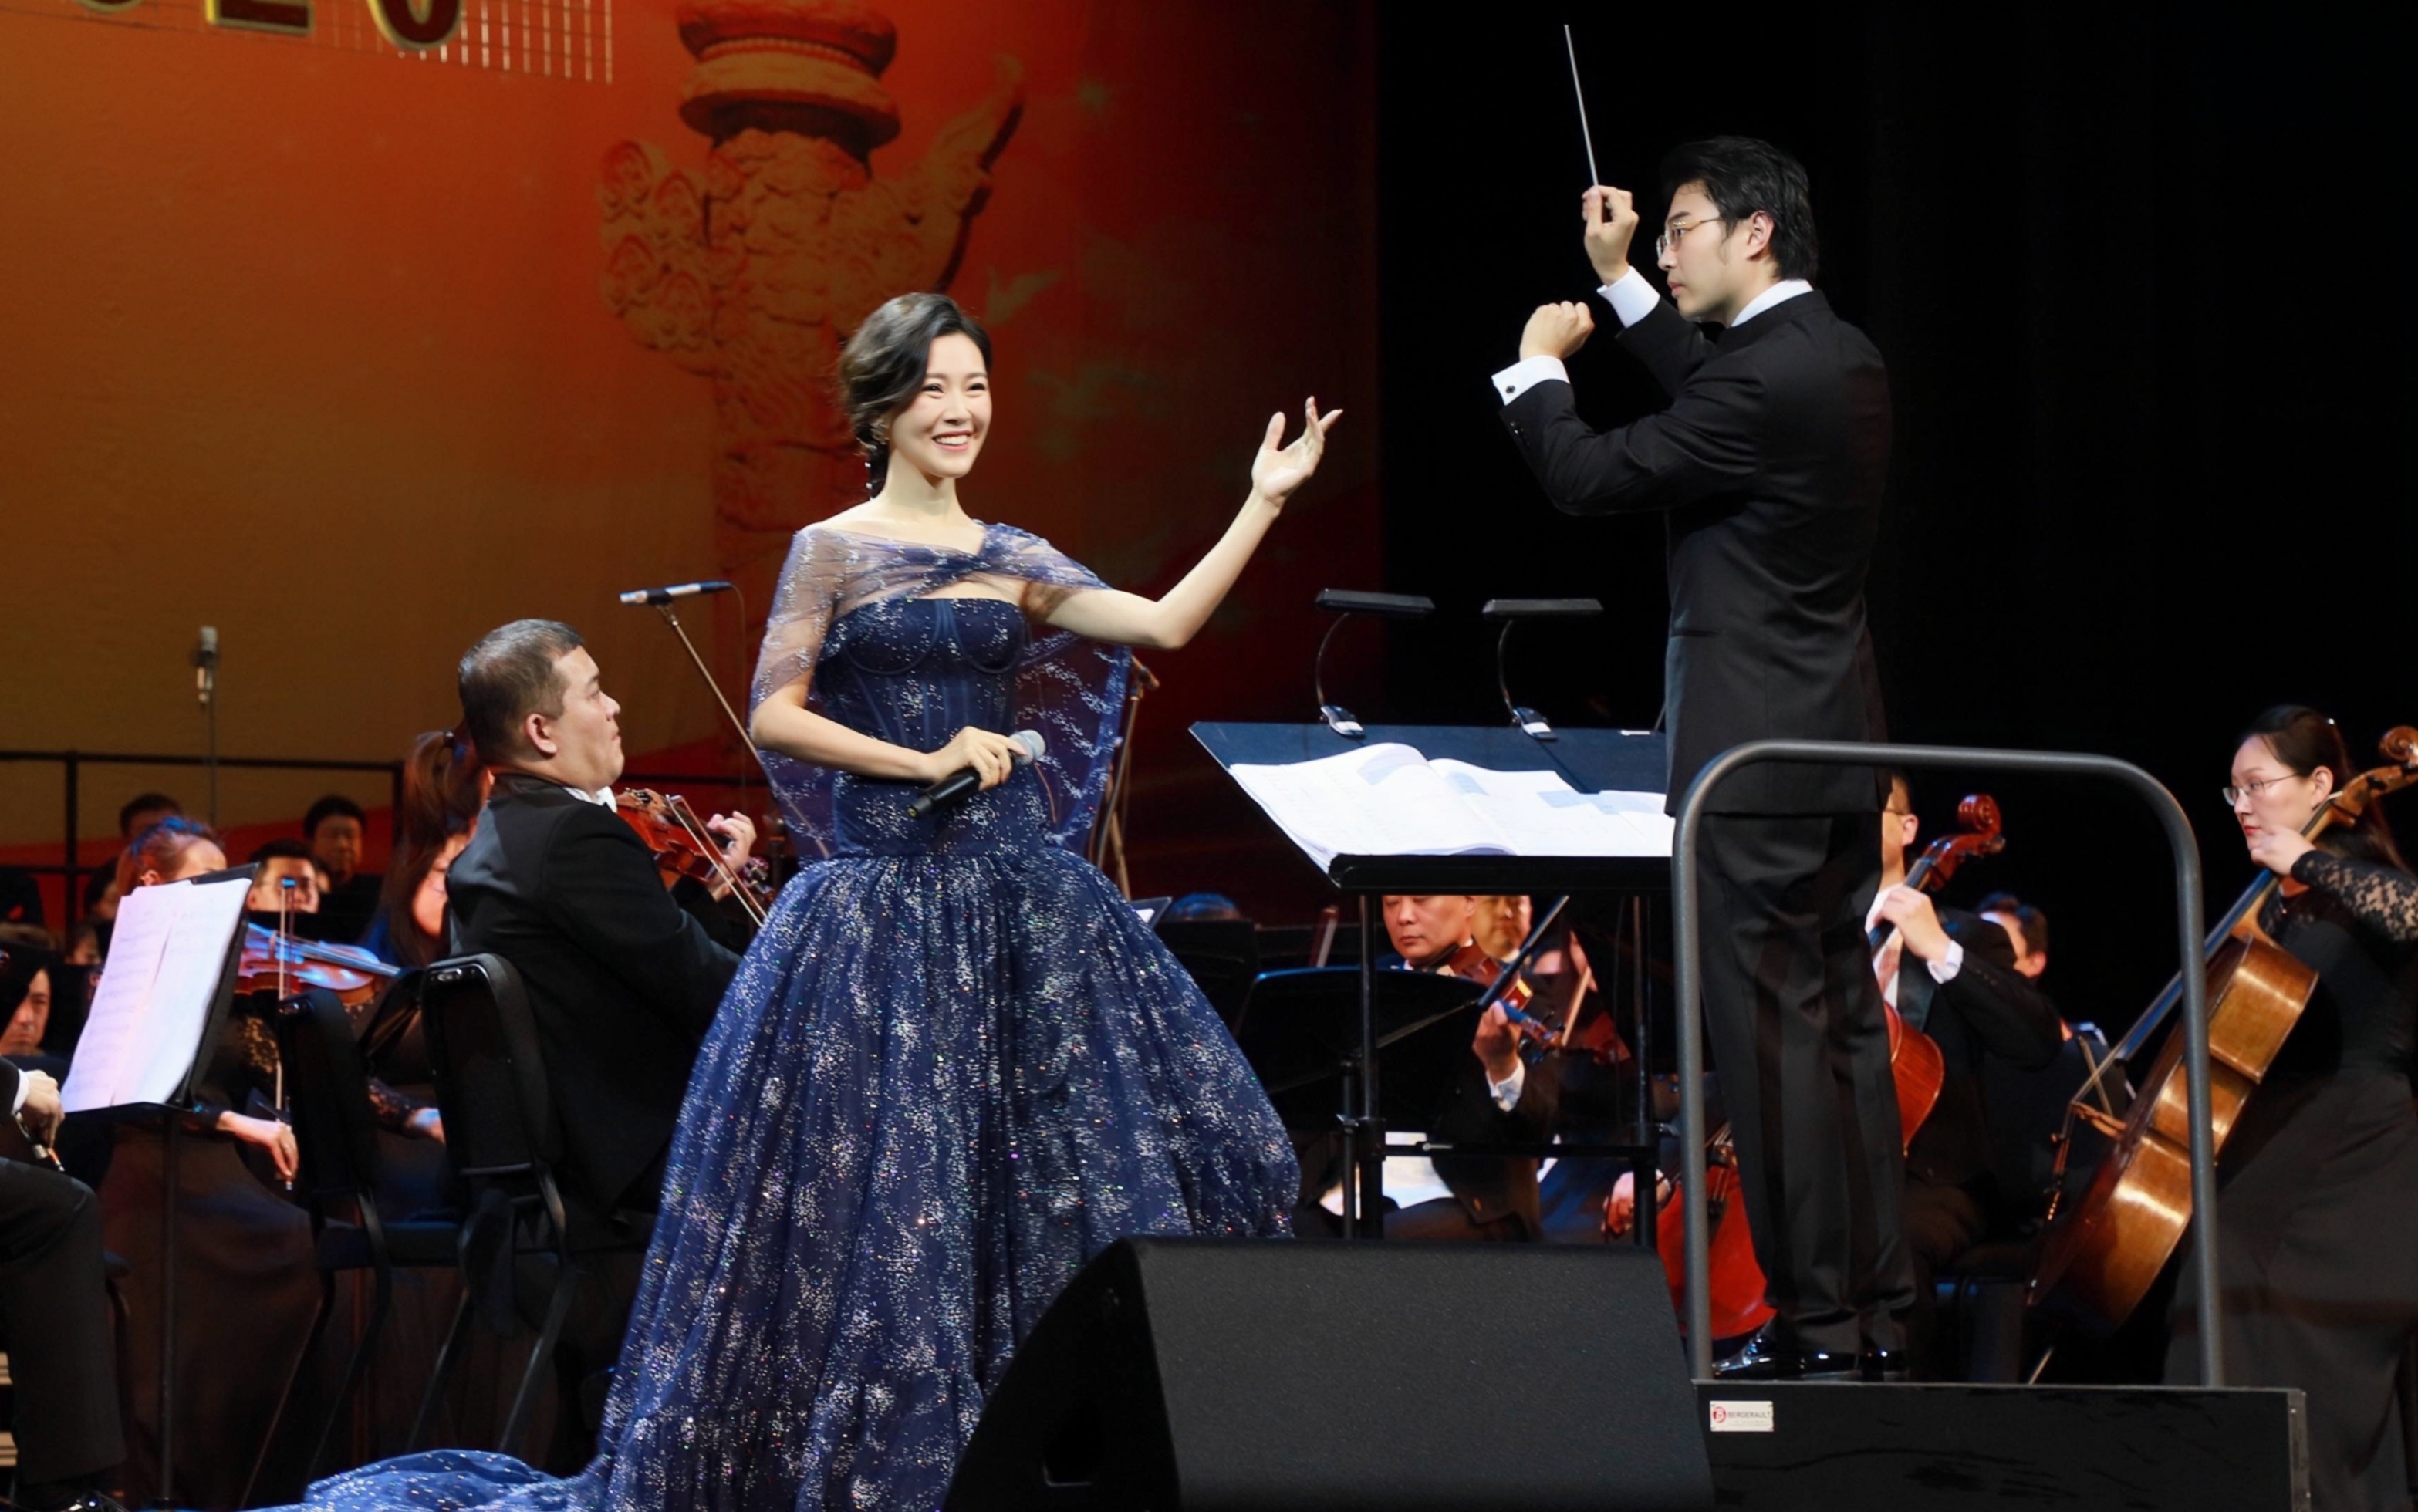 【常思思】《最美中国》+《威尼斯狂欢夜》2020.9.27”我爱我的祖国“庆祝新中国成立71周年大型交响合唱音乐会